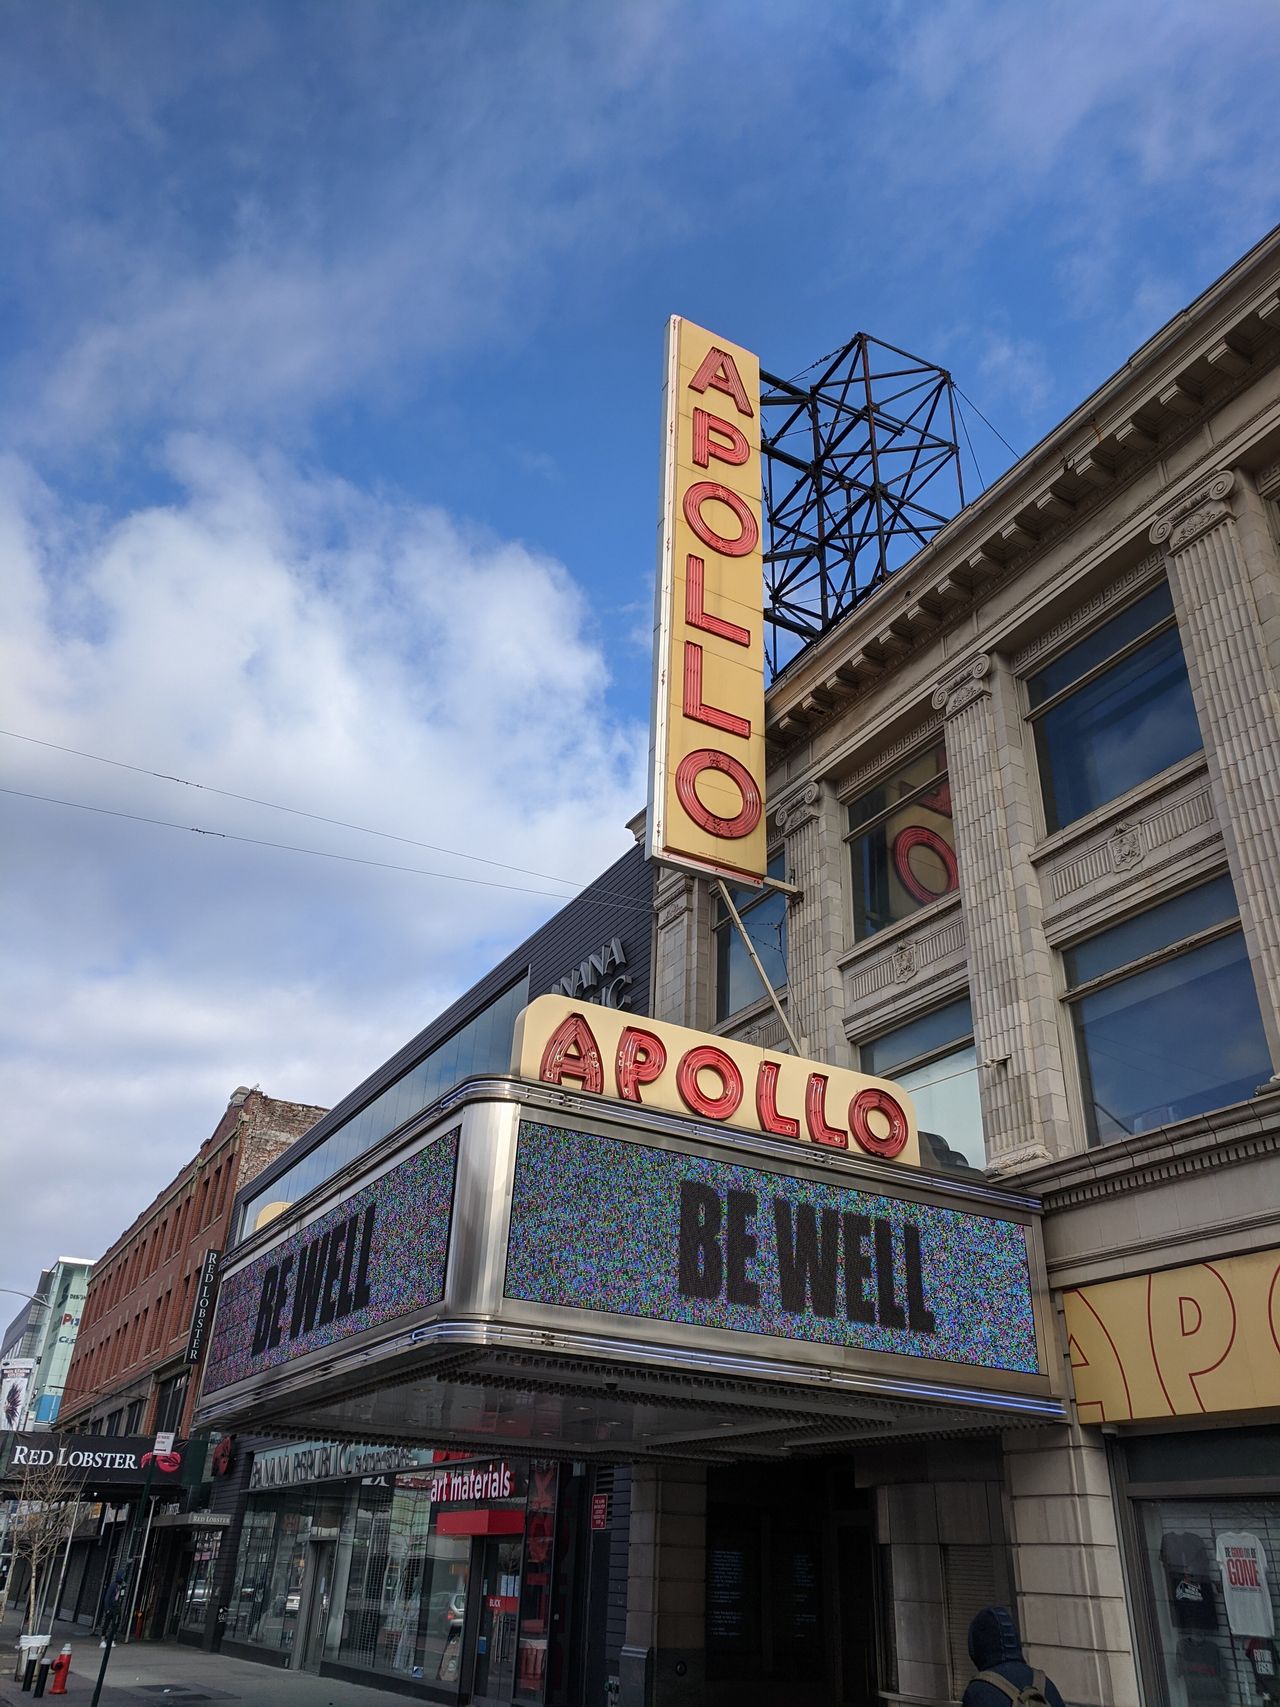 Το ιστορικό Apollo Theater του Χάρλεμ, εύχεται "Να είστε καλά".